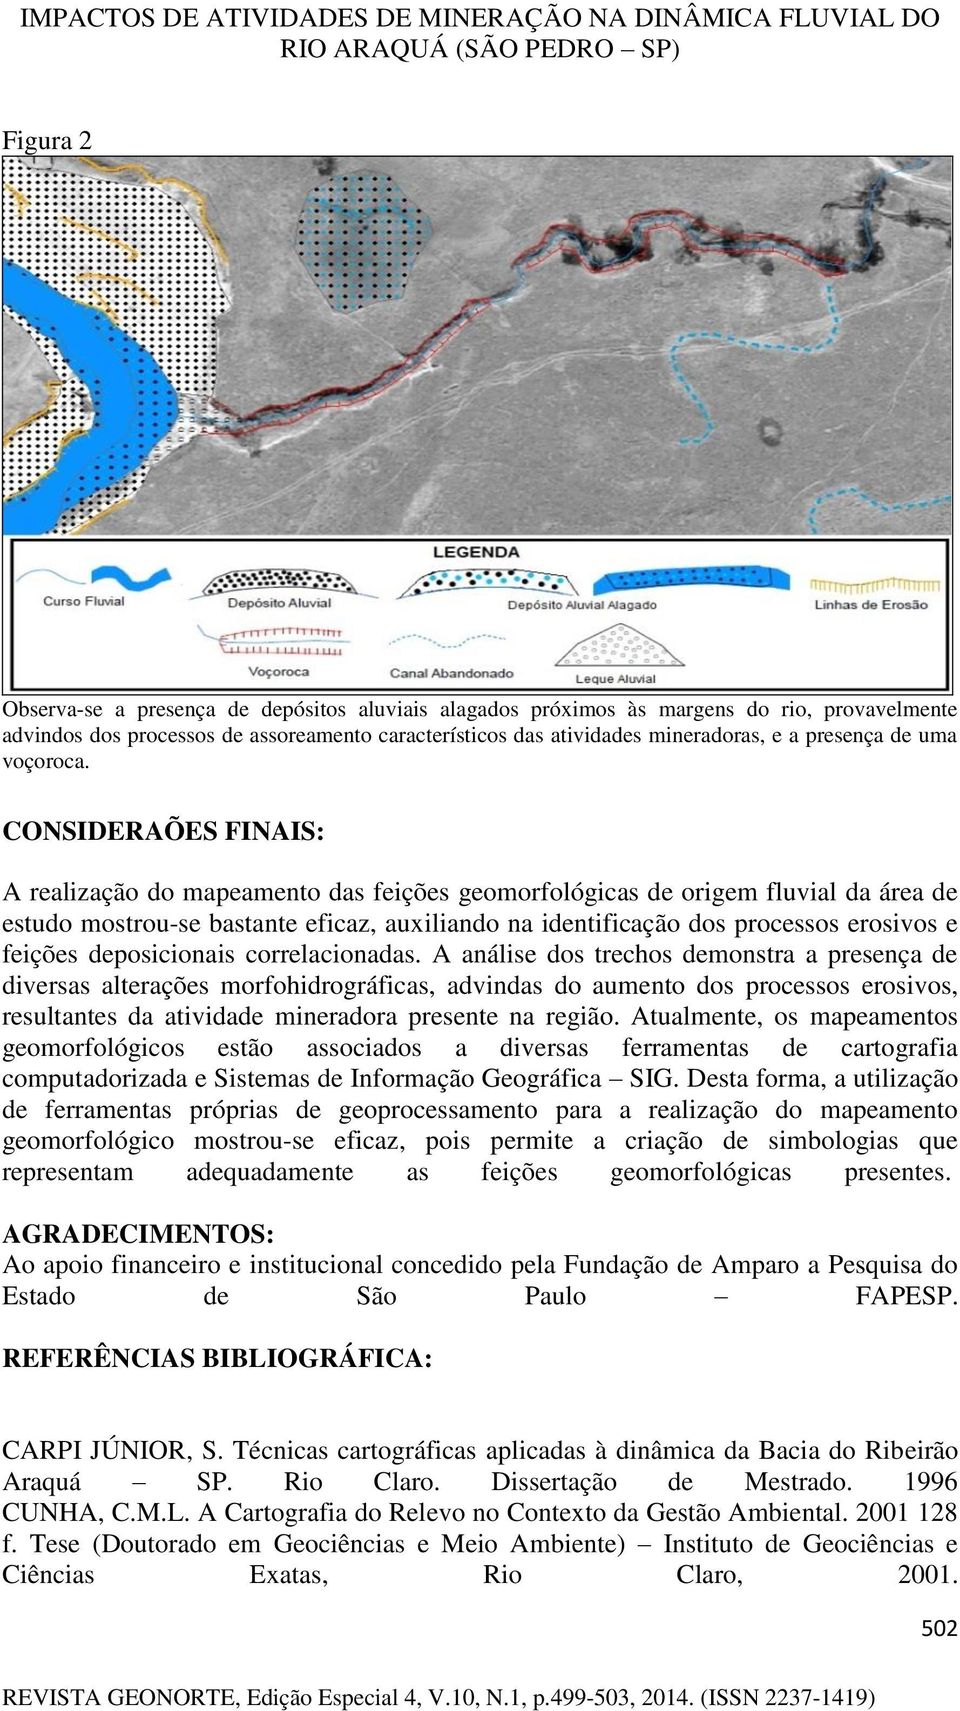 CONSIDERAÕES FINAIS: A realização do mapeamento das feições geomorfológicas de origem fluvial da área de estudo mostrou-se bastante eficaz, auxiliando na identificação dos processos erosivos e